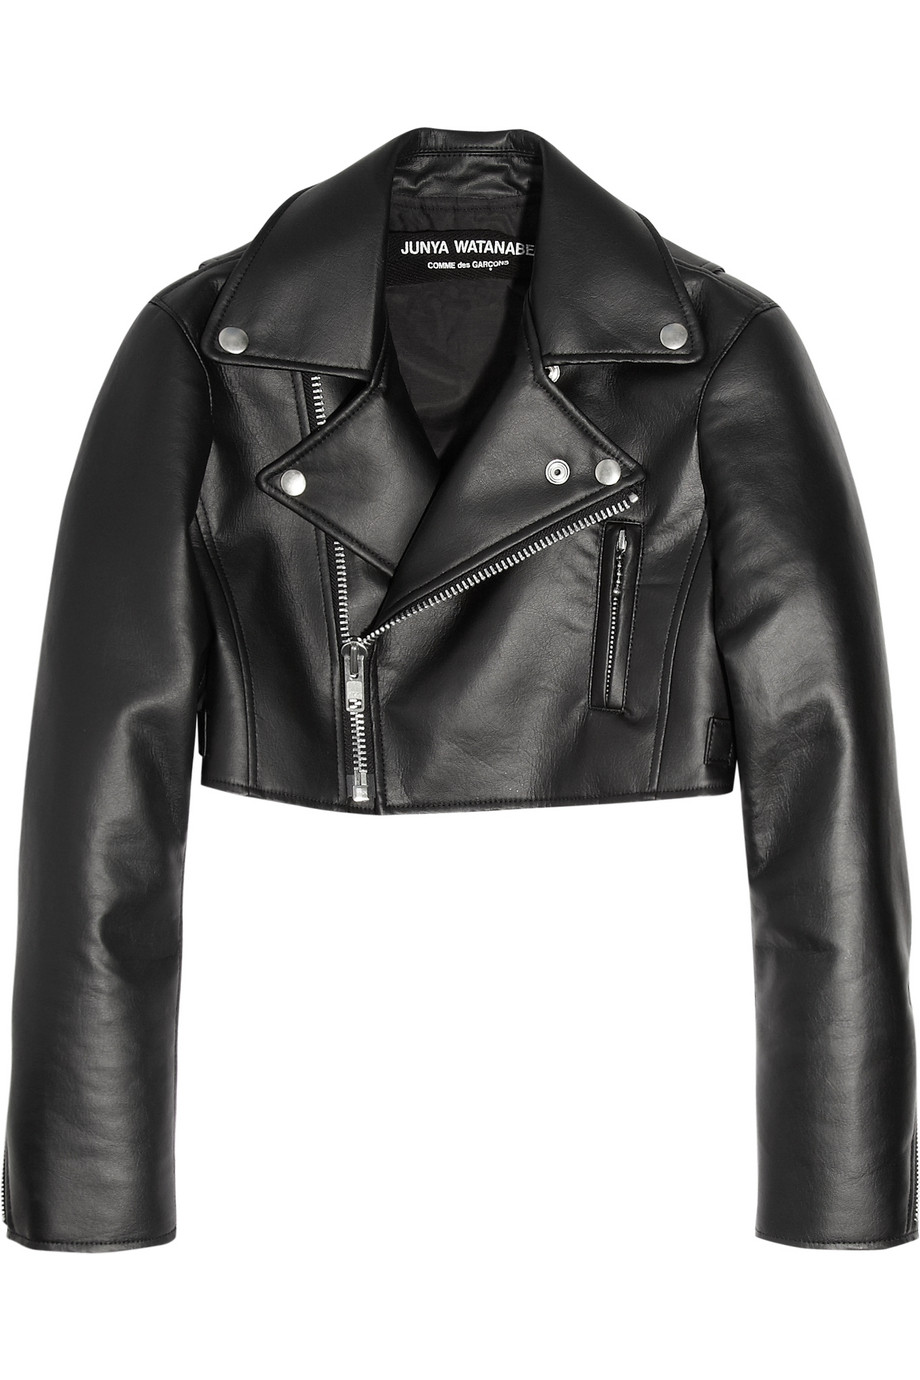 Lyst - Junya watanabe Cropped Faux Leather Biker Jacket in Black